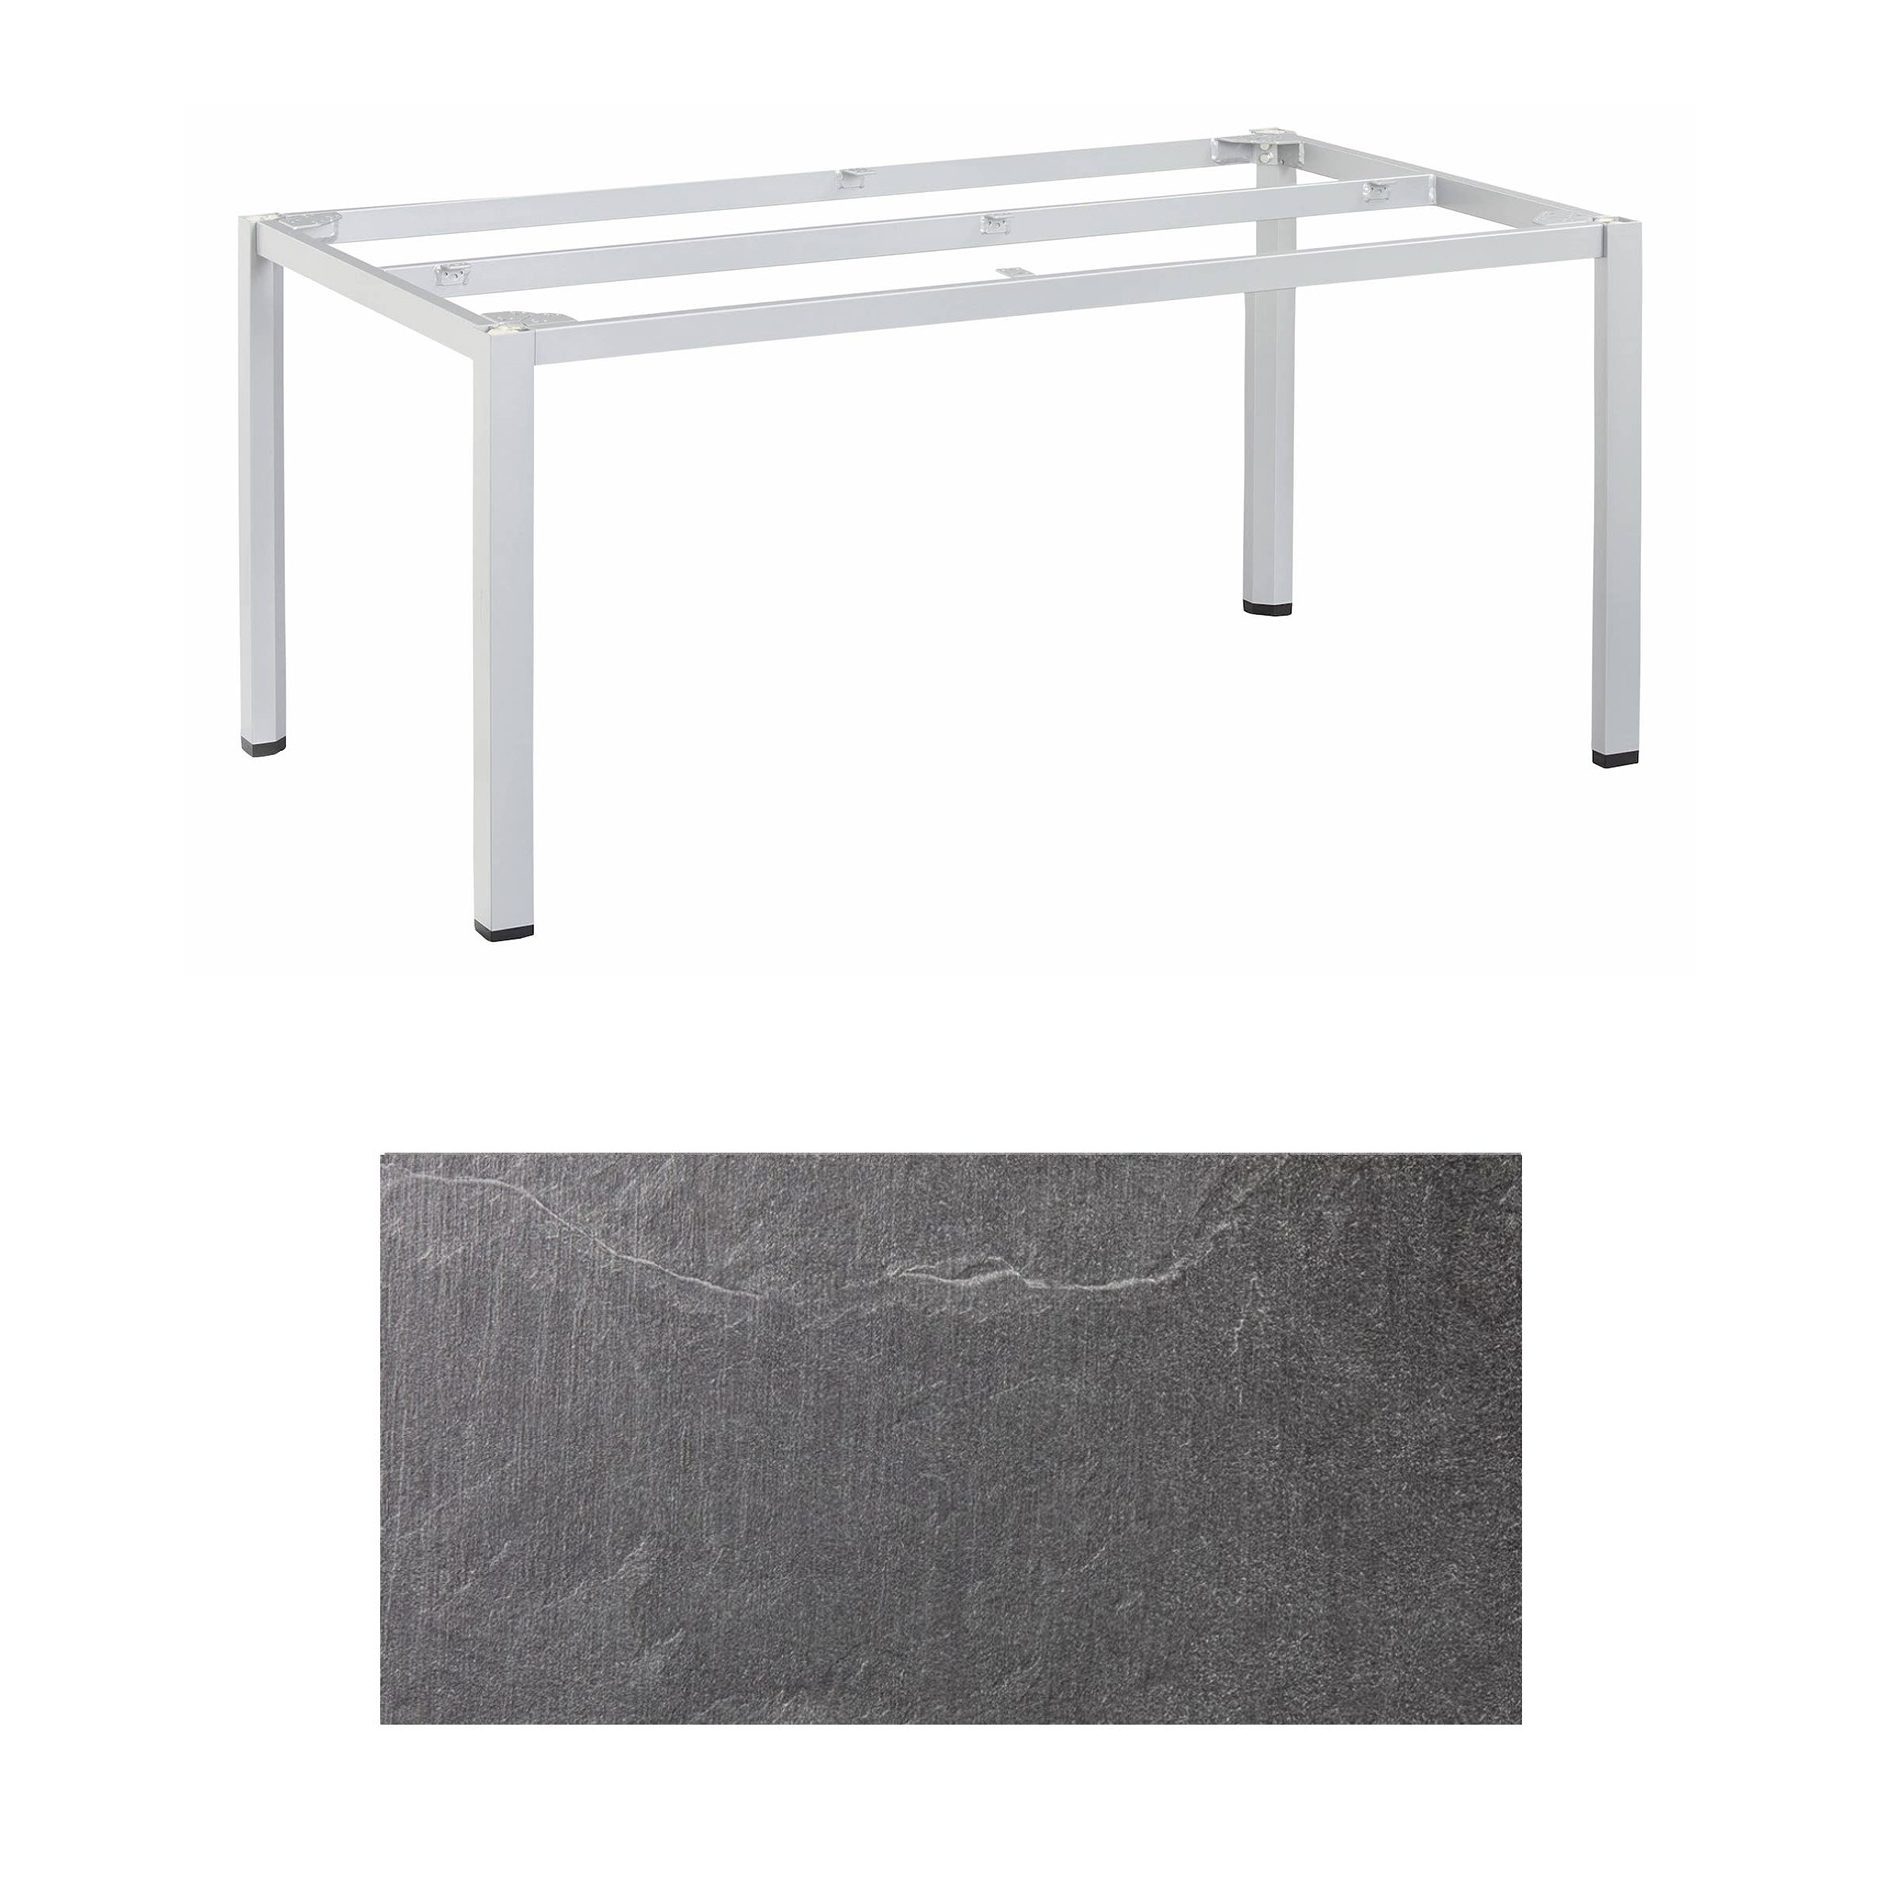 Kettler "Cubic" Tischgestell 180x95 cm, Aluminium silber mit HPL-Platte Jura anthrazit